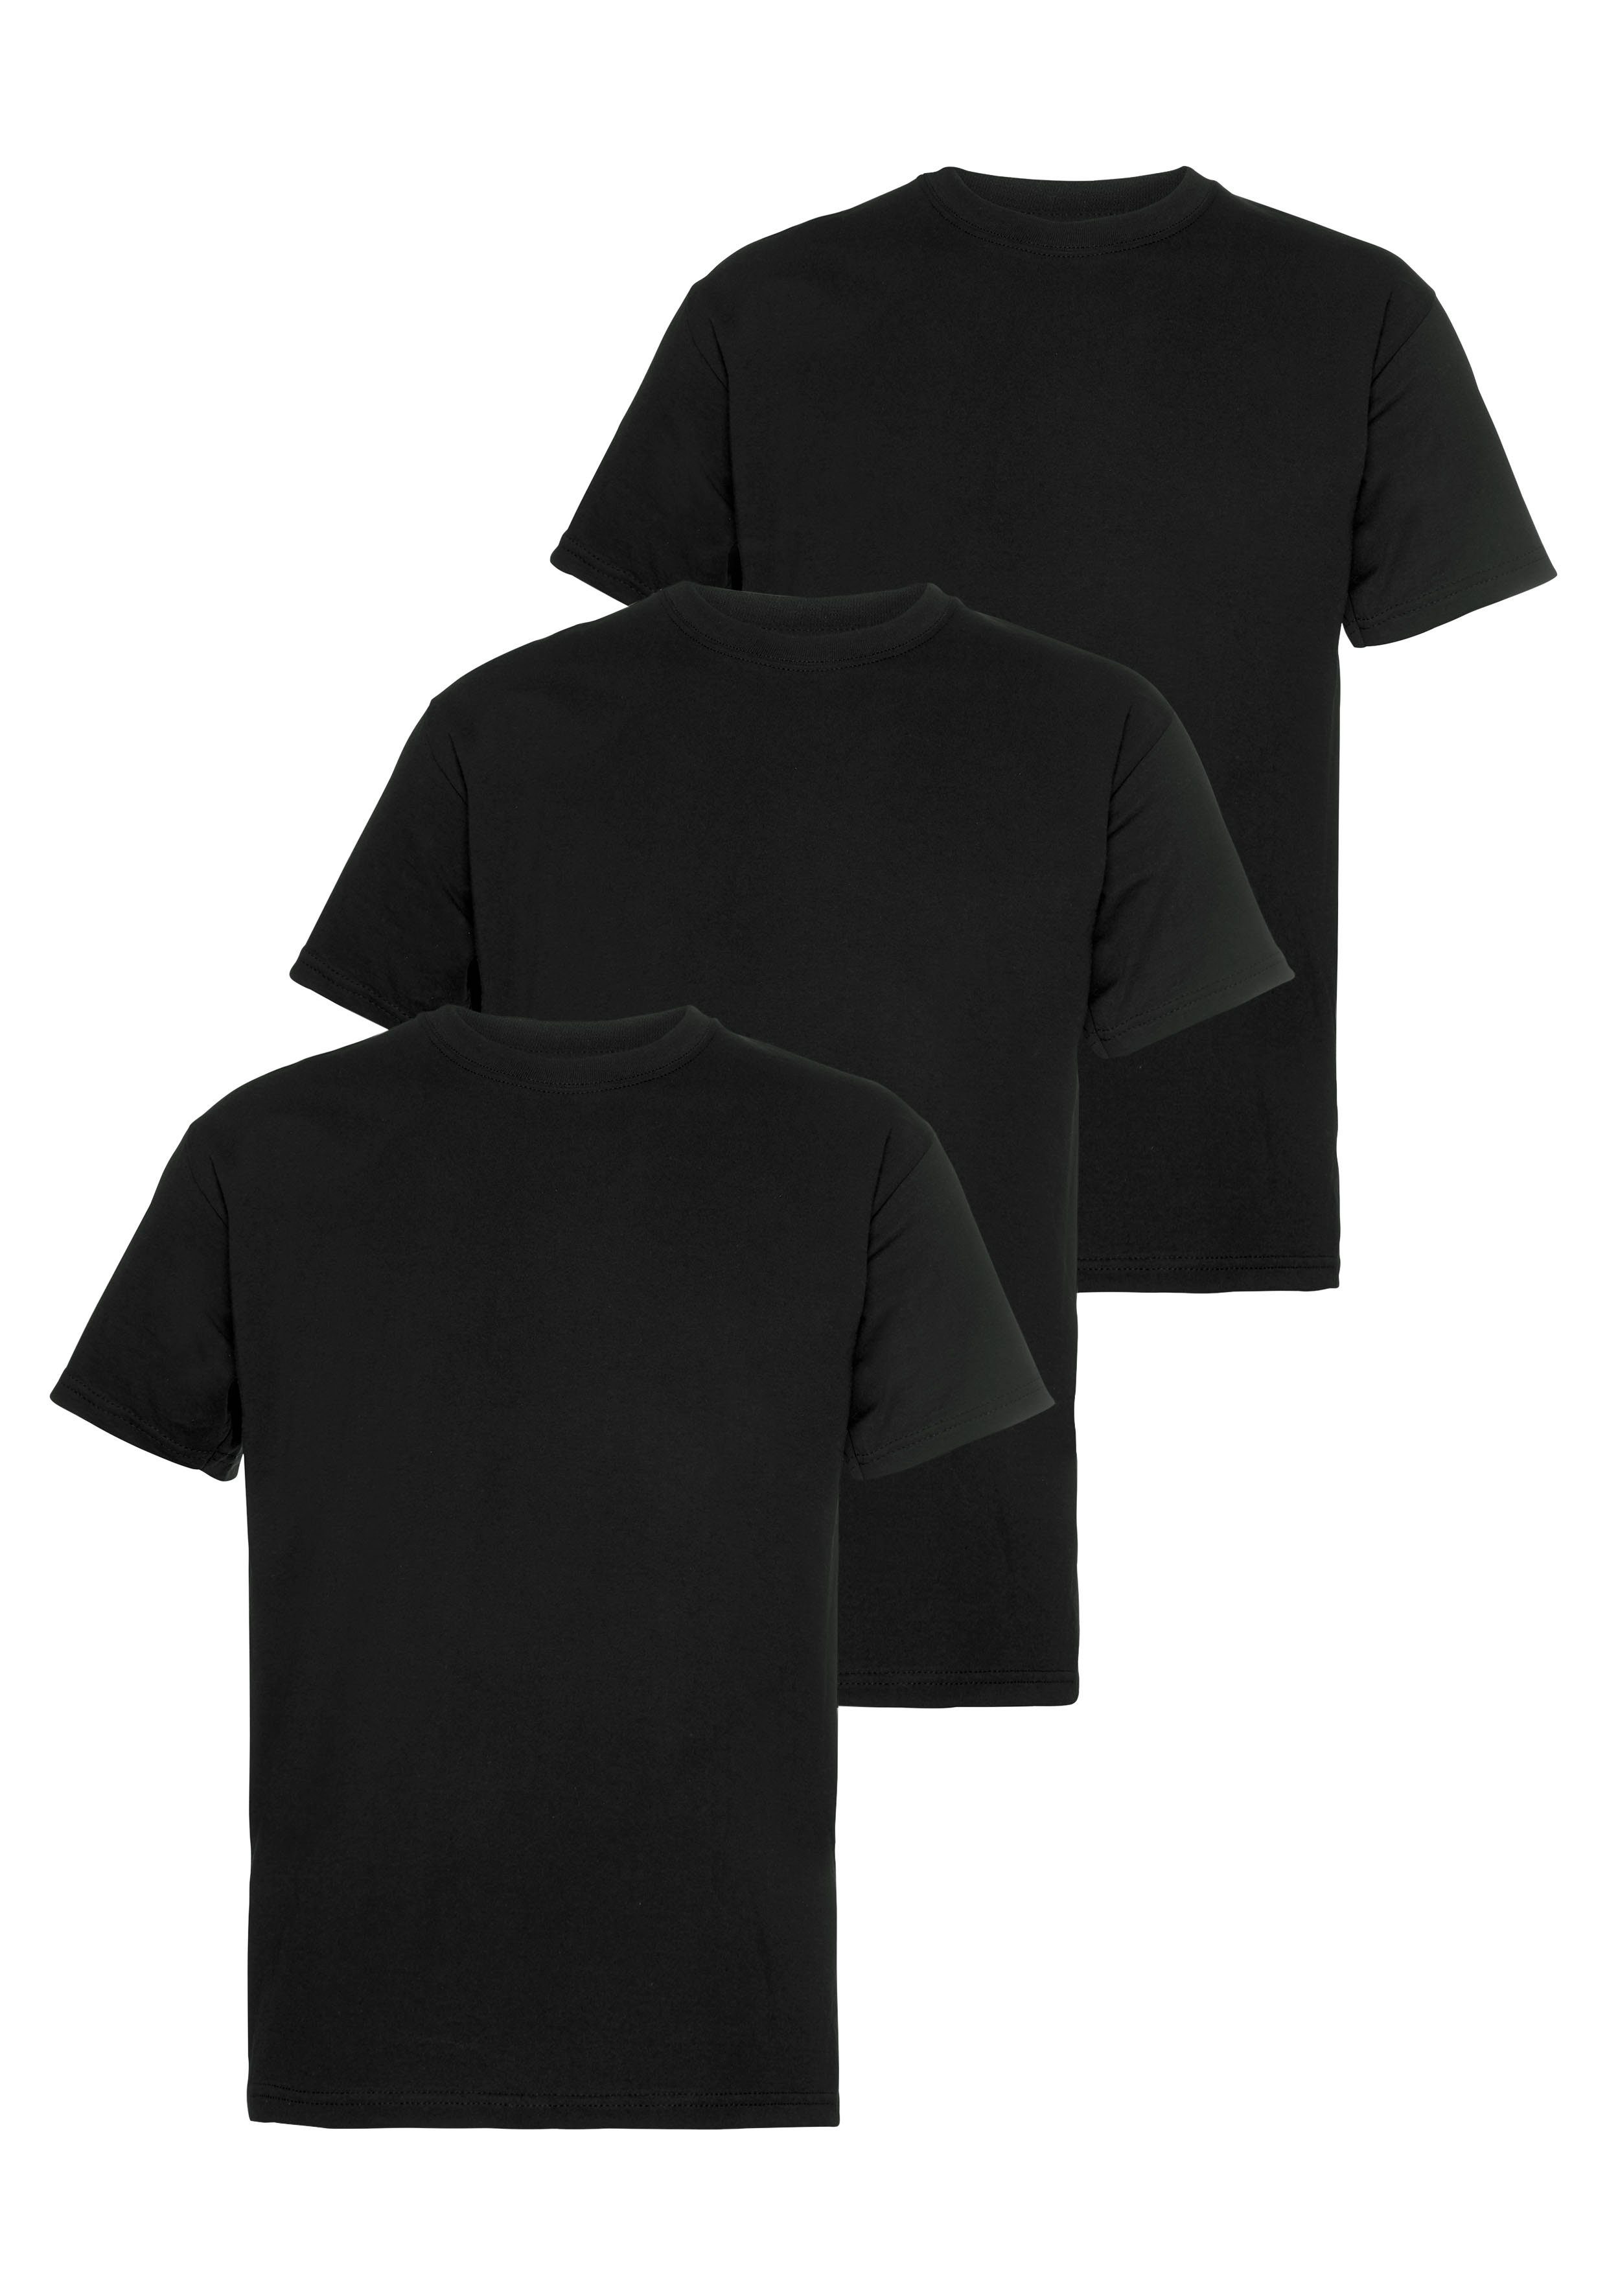 Herren T-Shirt in schwarz online kaufen | OTTO